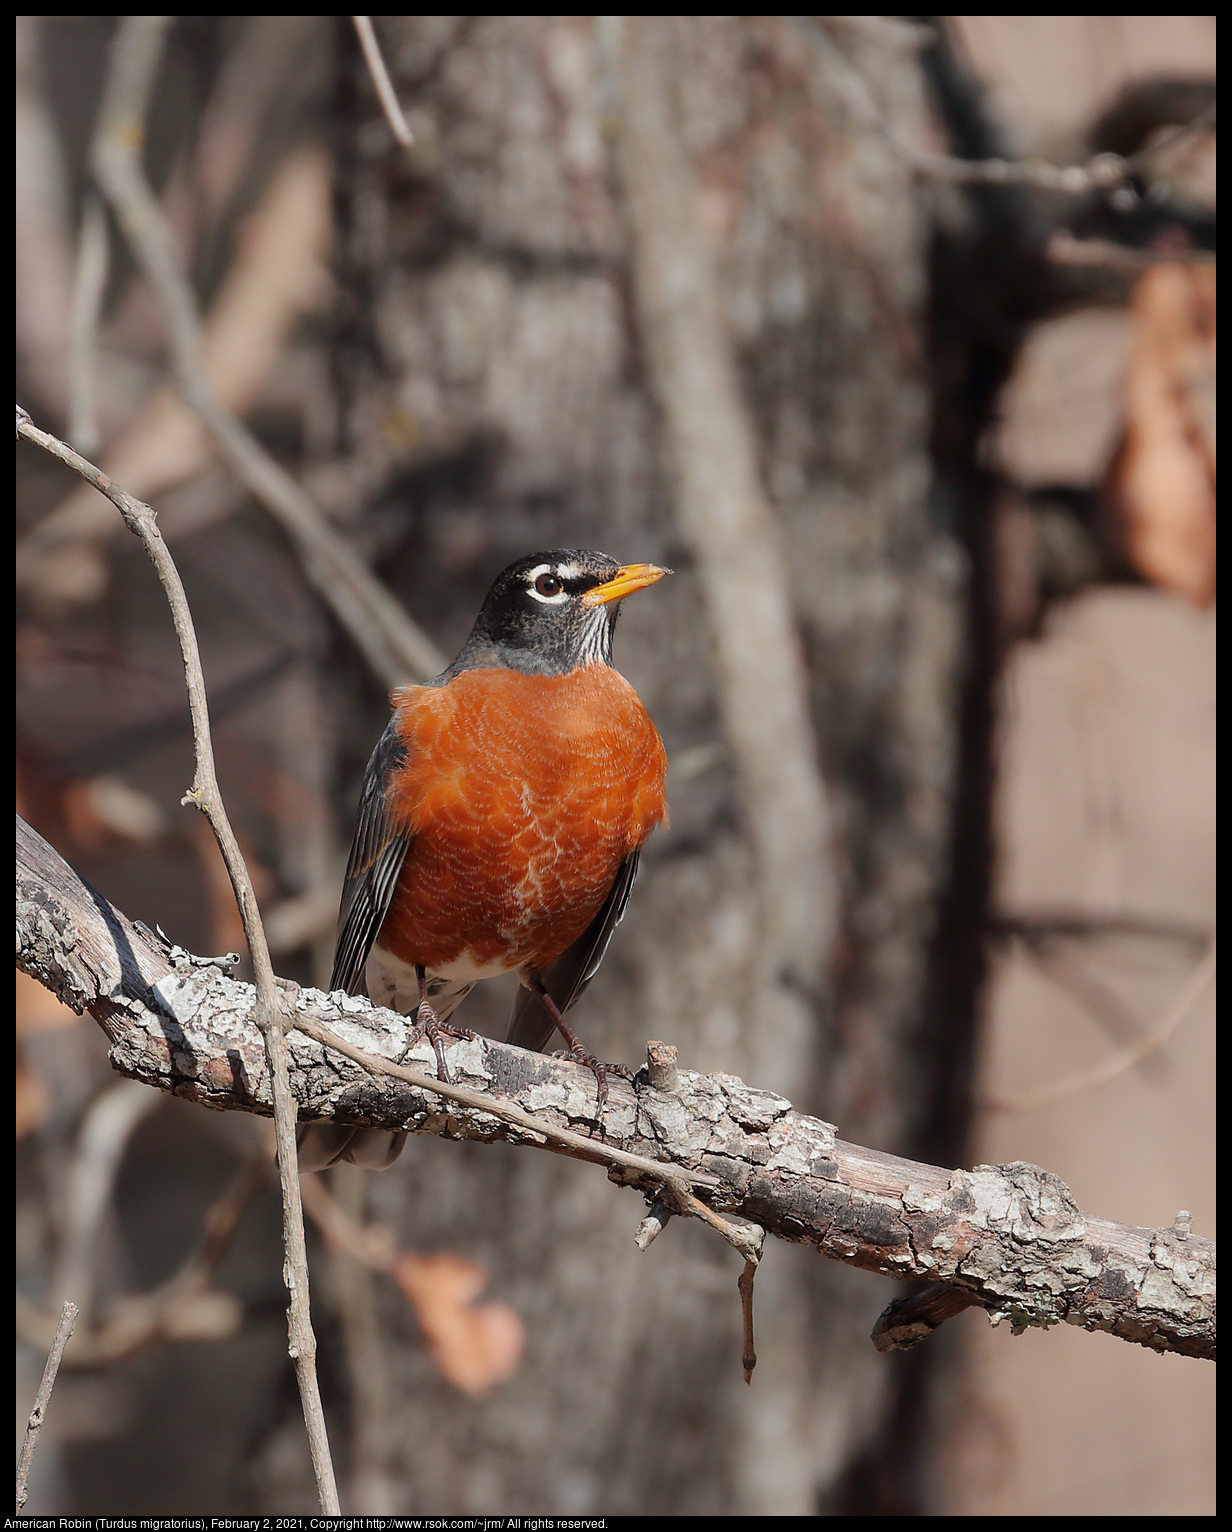 American Robin (Turdus migratorius), February 2, 2021